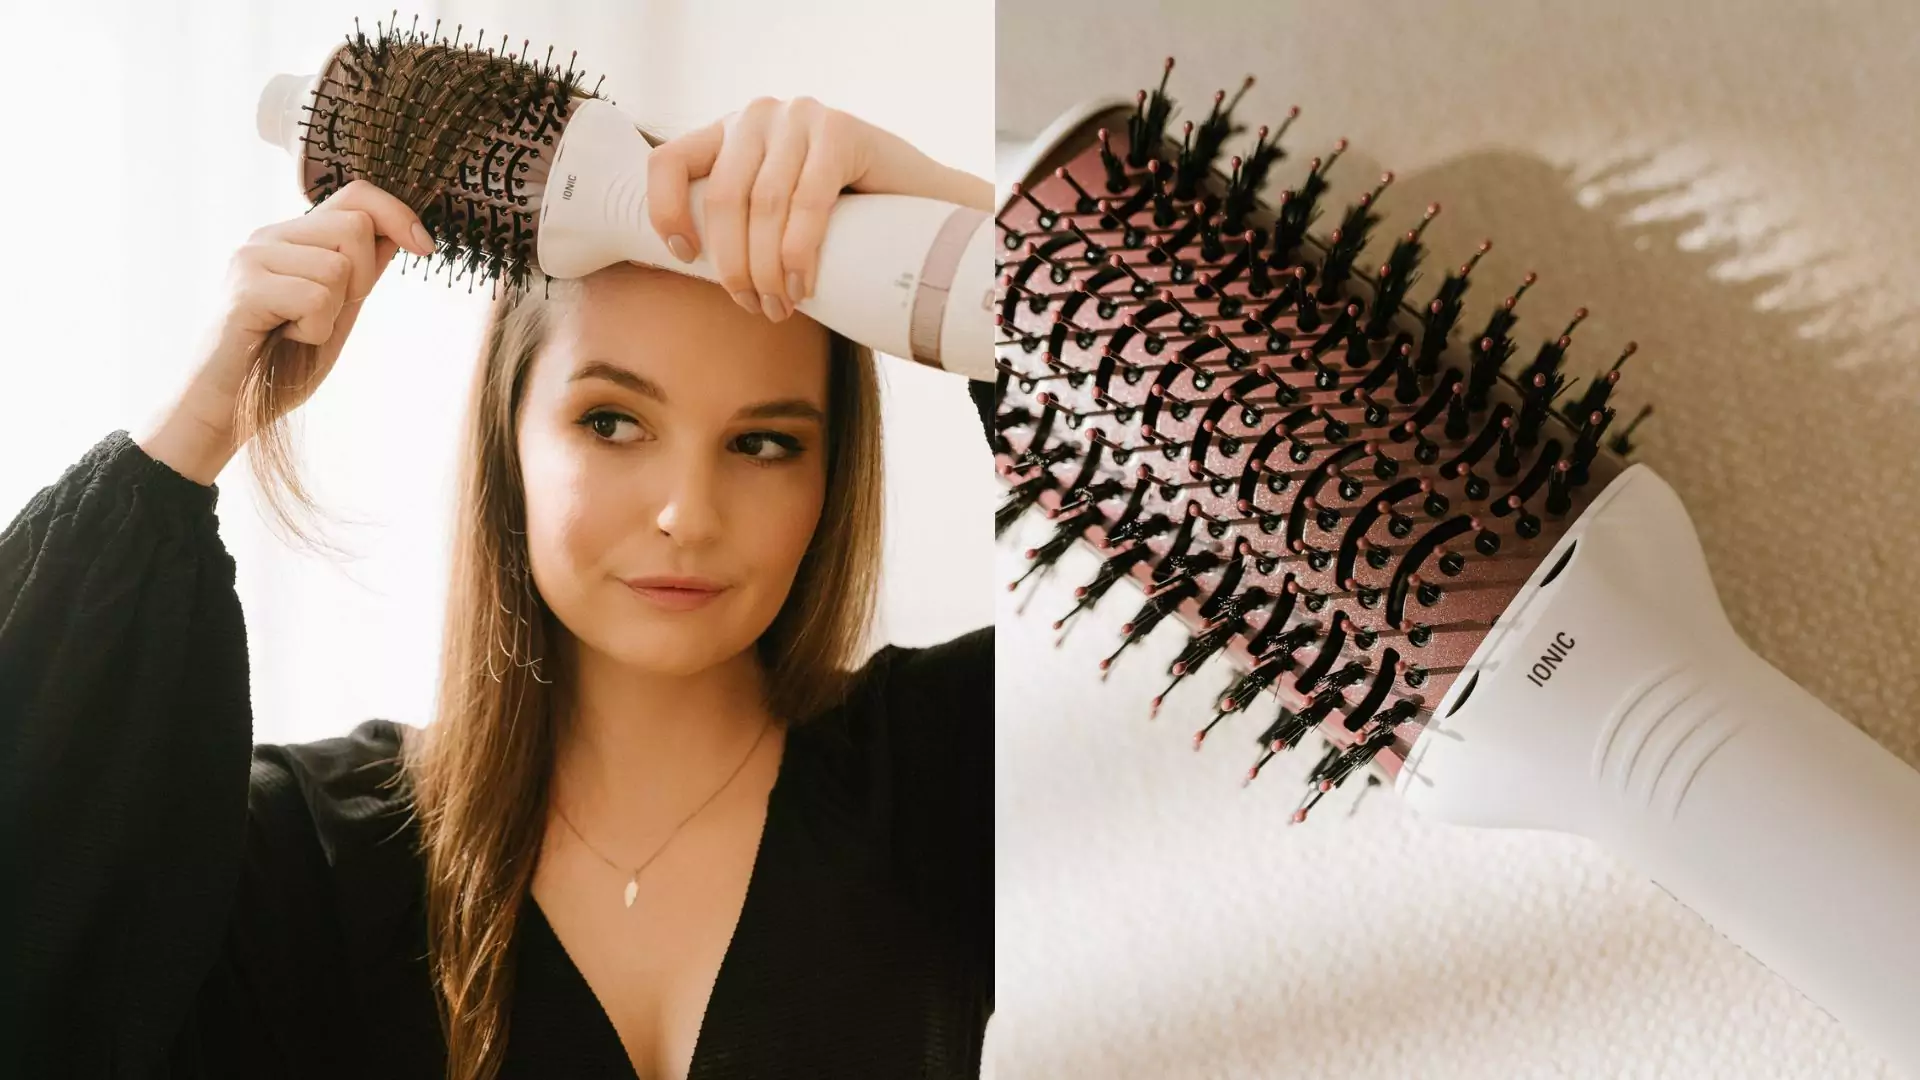 Ta suszarko-lokówka zwiększa naturalną objętość włosów nawet dwukrotnie. Efekt 3D. "Genialna rzecz!"